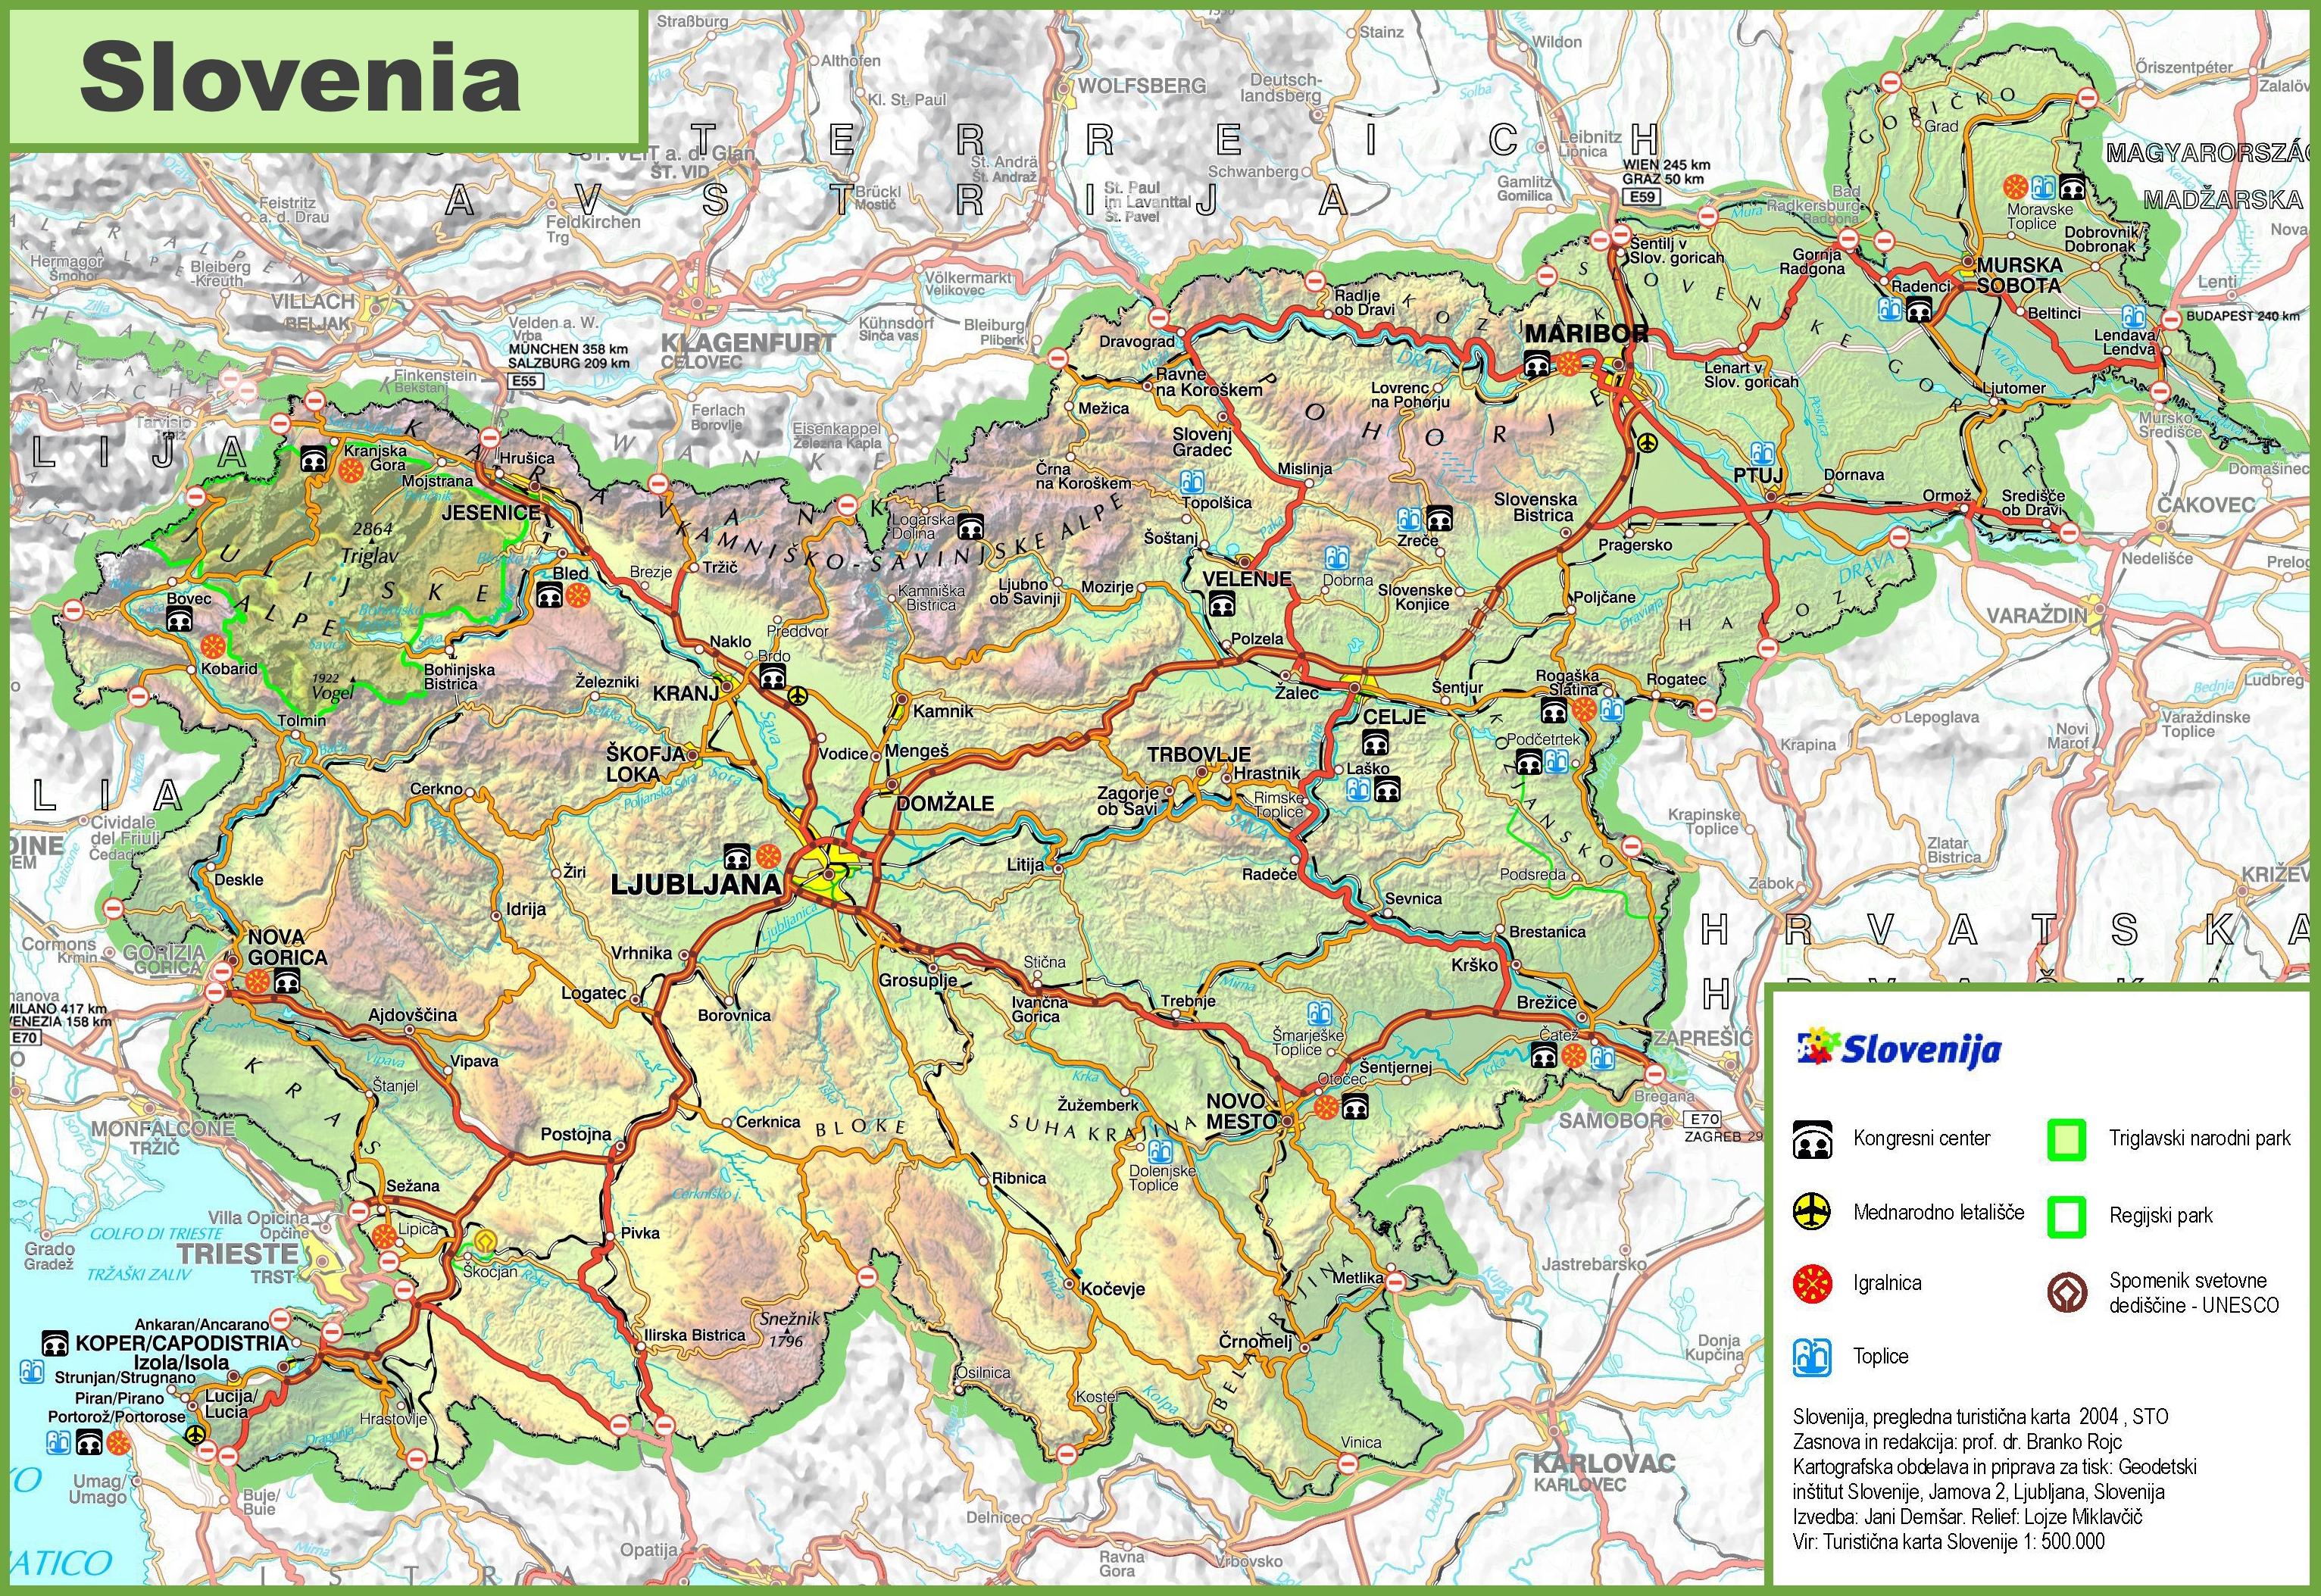 Slovenia road map - Kartta Slovenia road (Etelä-Euroopassa - Eurooppa)